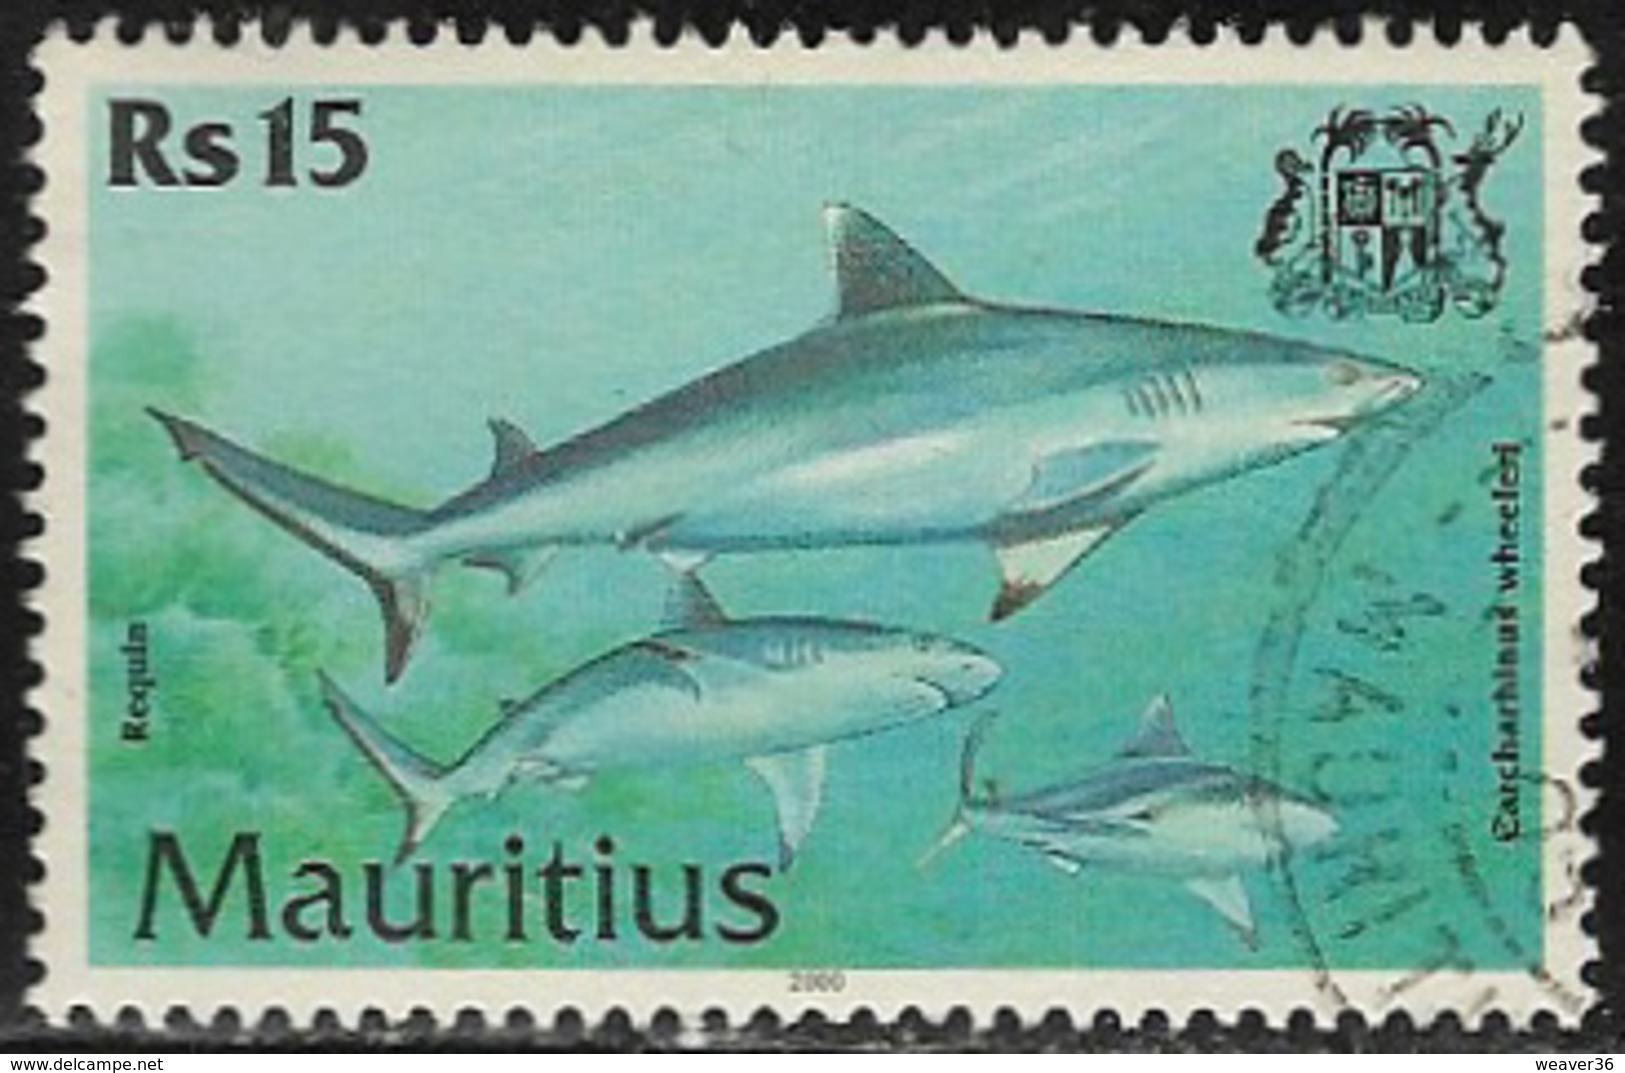 Mauritius SG1041 2000 Fish 15r Good/fine Used [7/8640/1D] - Mauritius (1968-...)